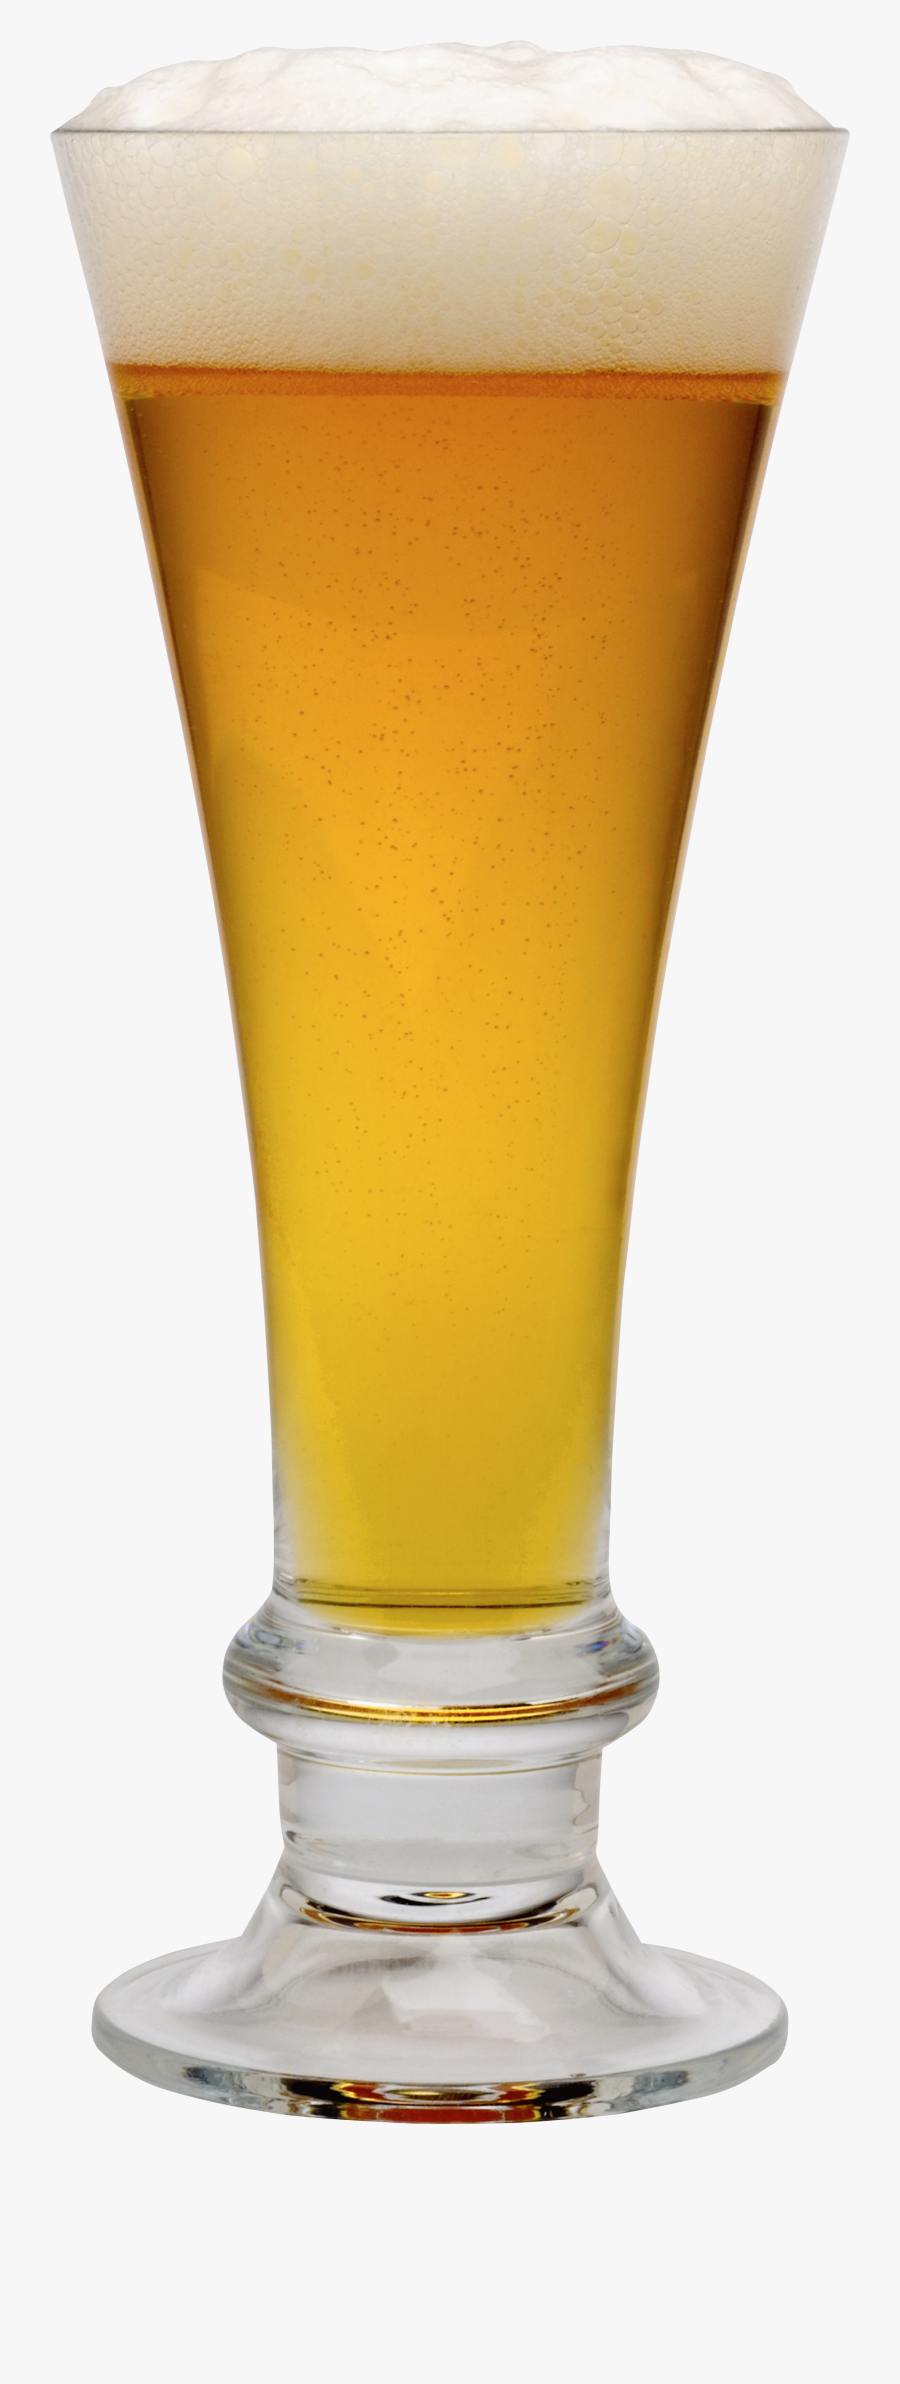 Goblet Beer Png Image - Glass Of Beer Transparent Background, Transparent Clipart